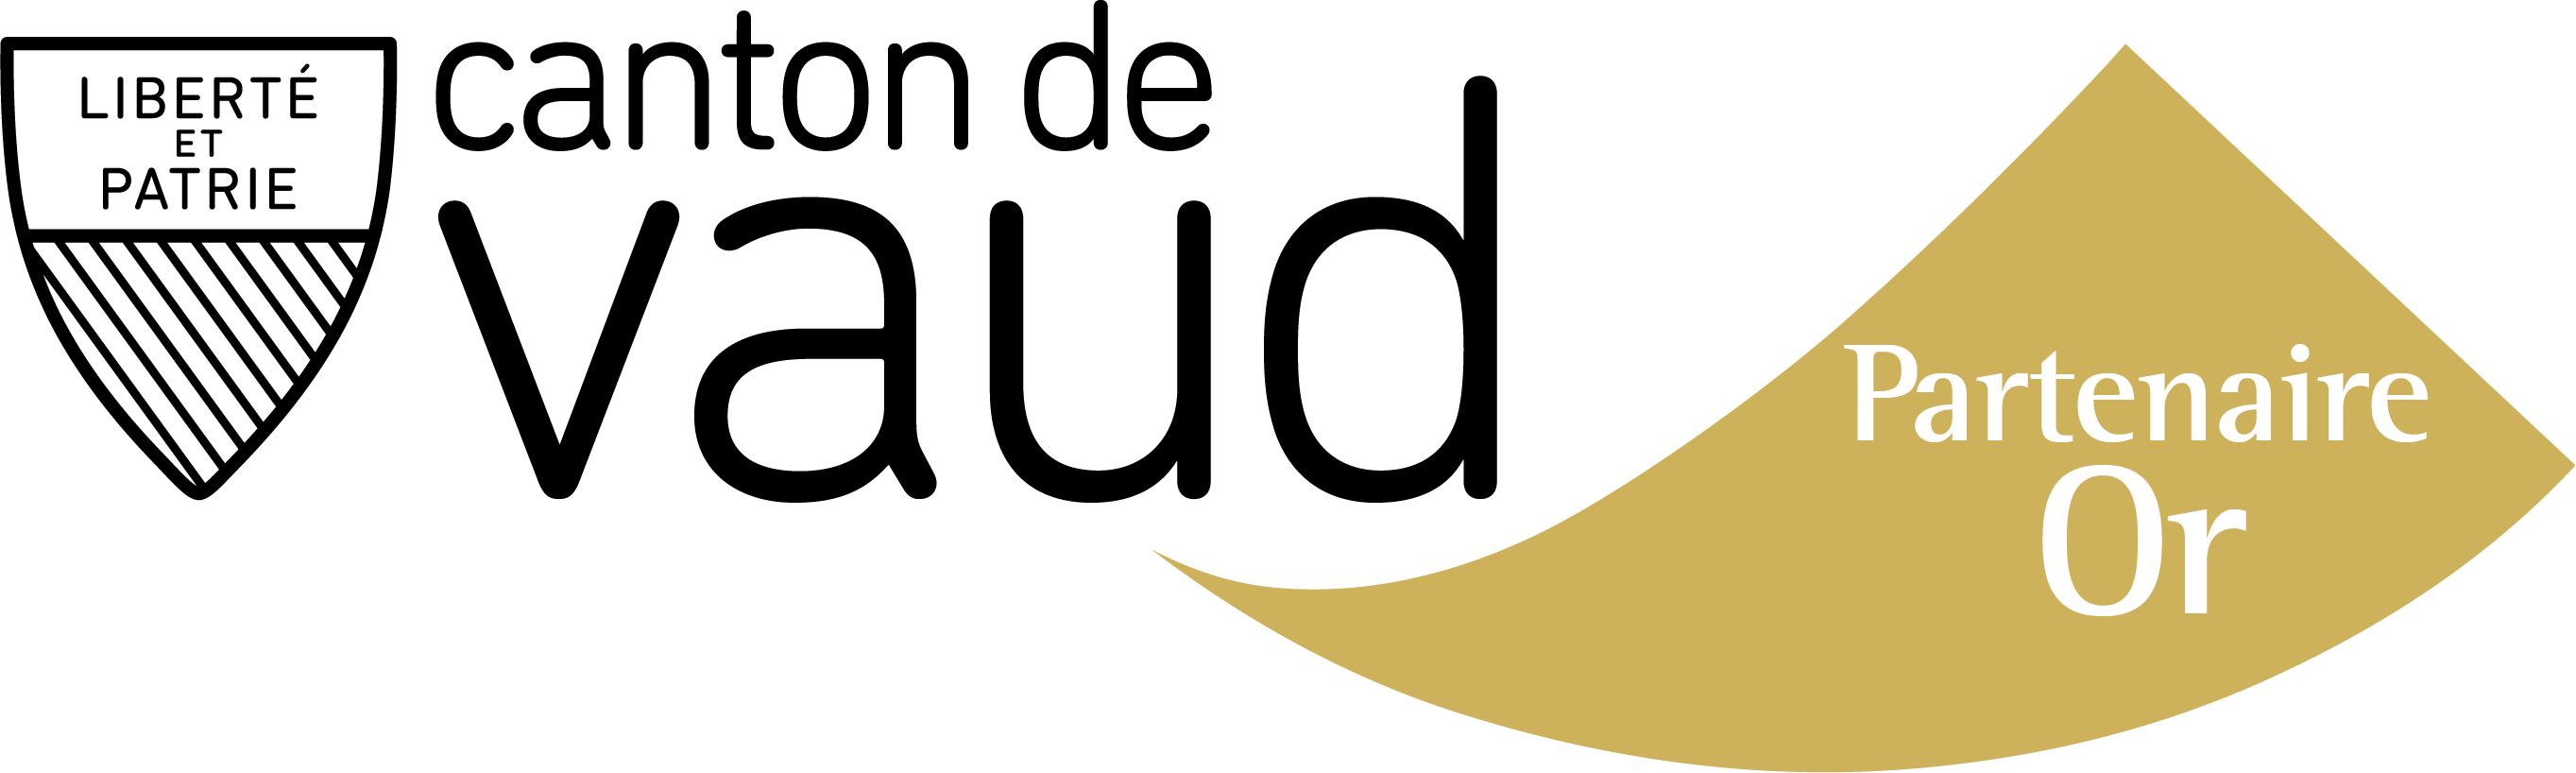 Logo Canton de Vaud